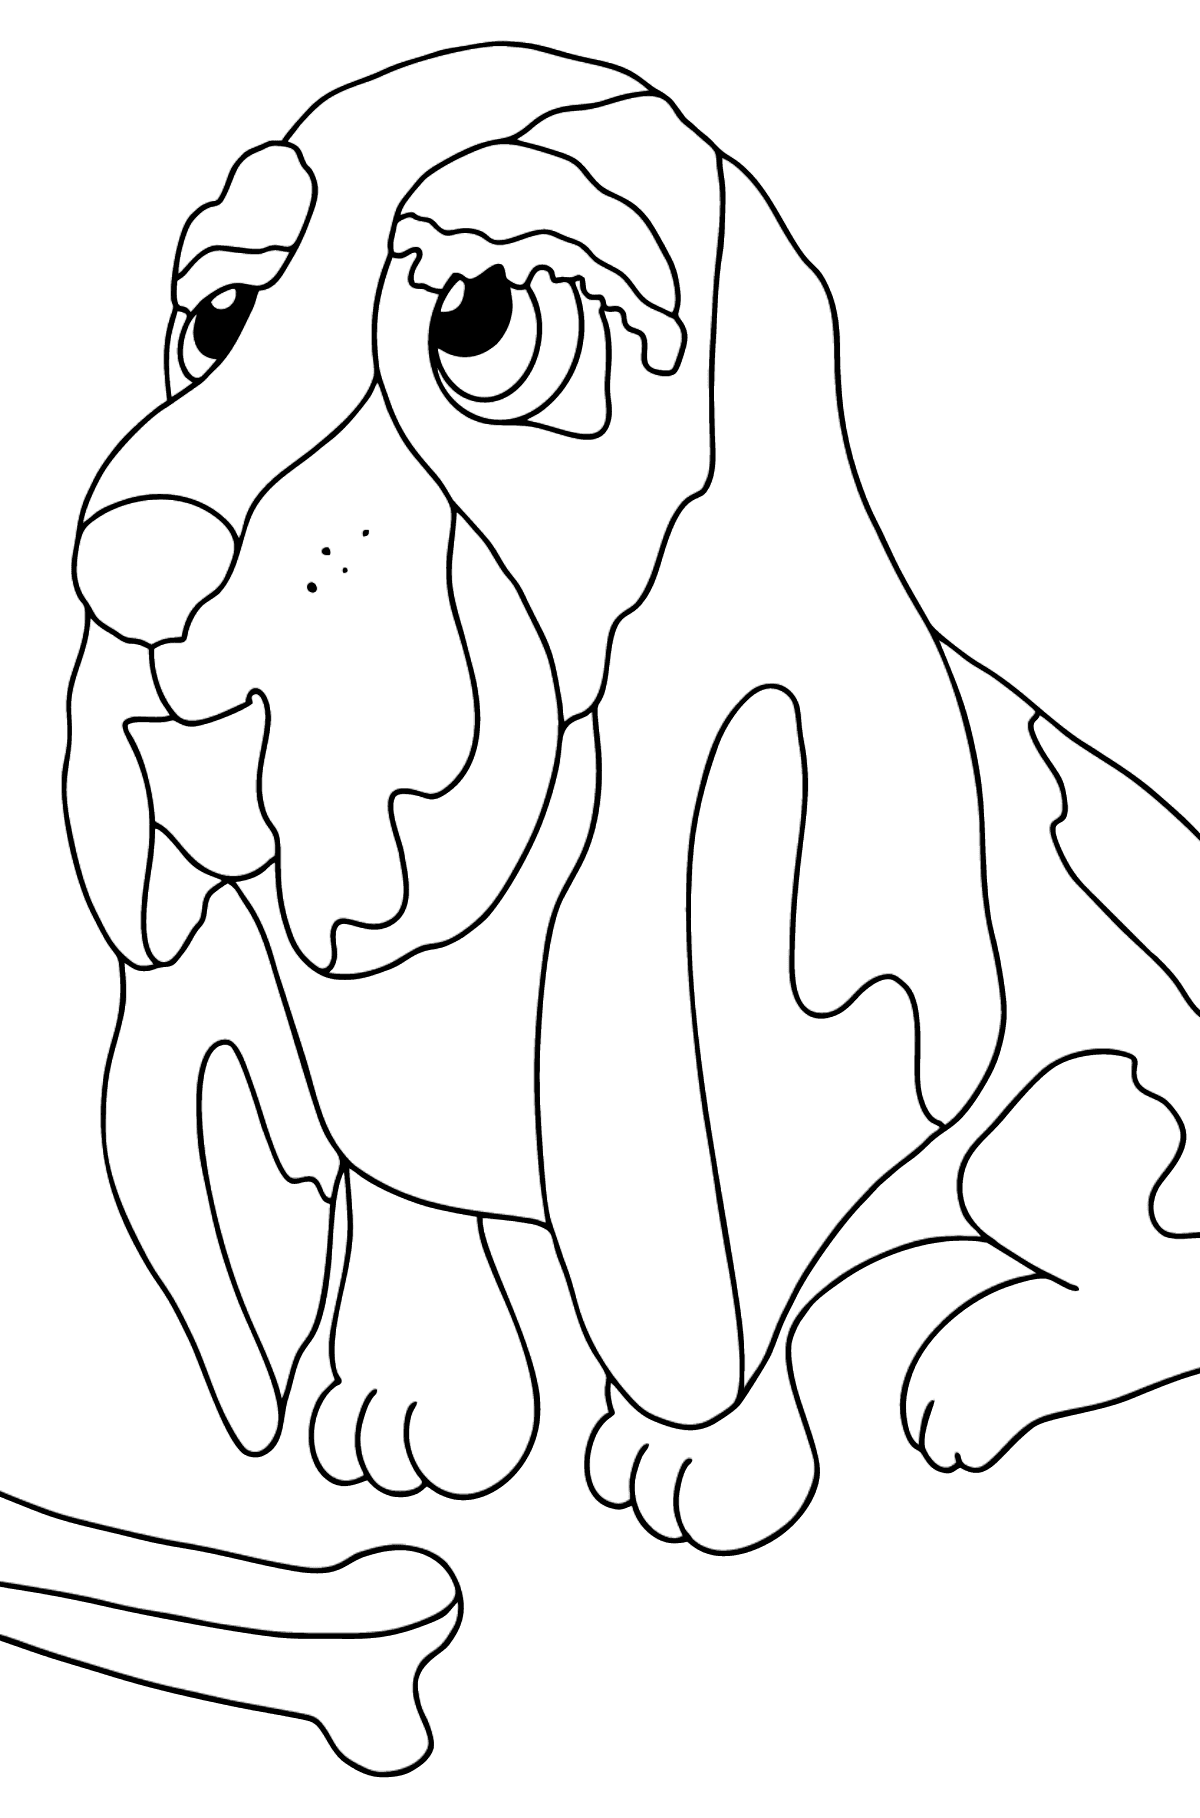 Tegning til fargelegging hund og ben - Tegninger til fargelegging for barn